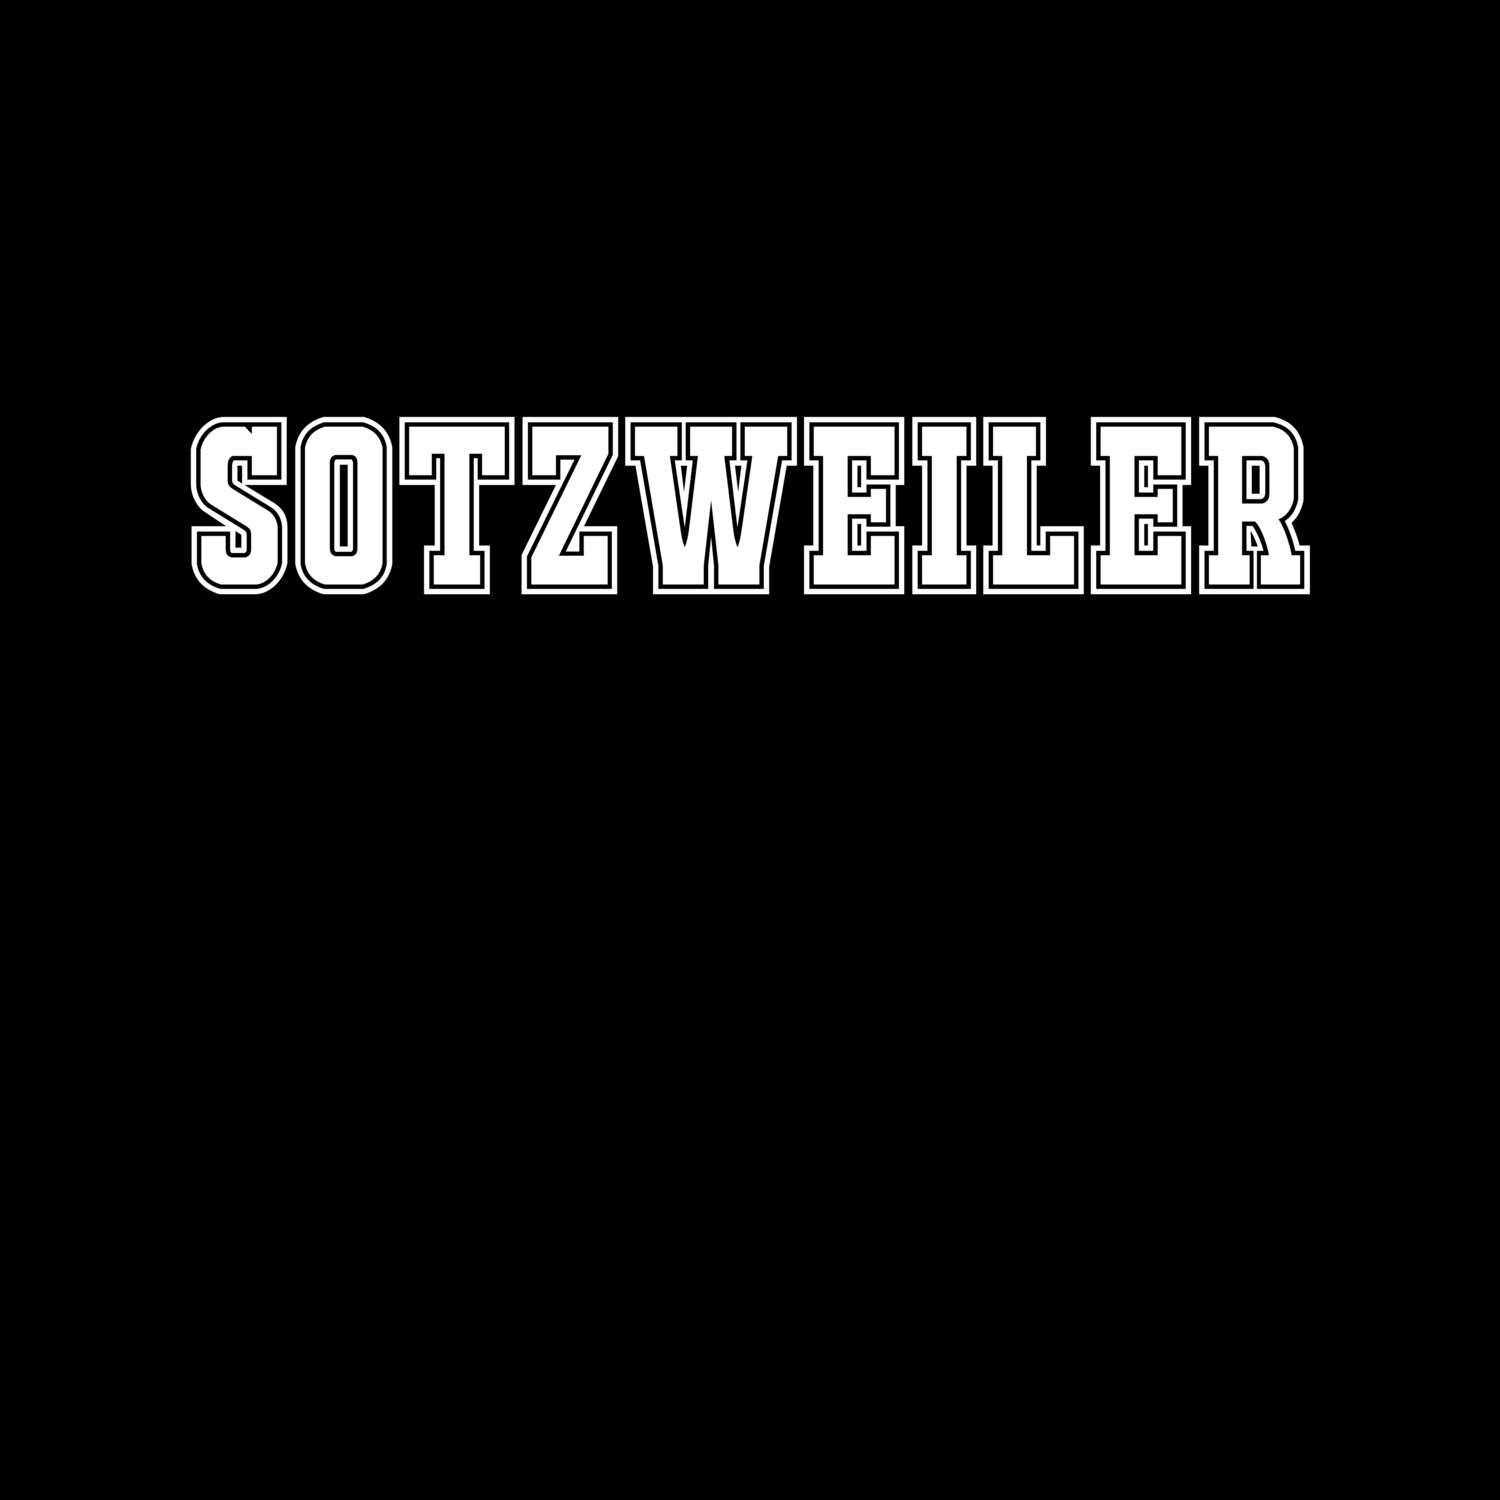 Sotzweiler T-Shirt »Classic«